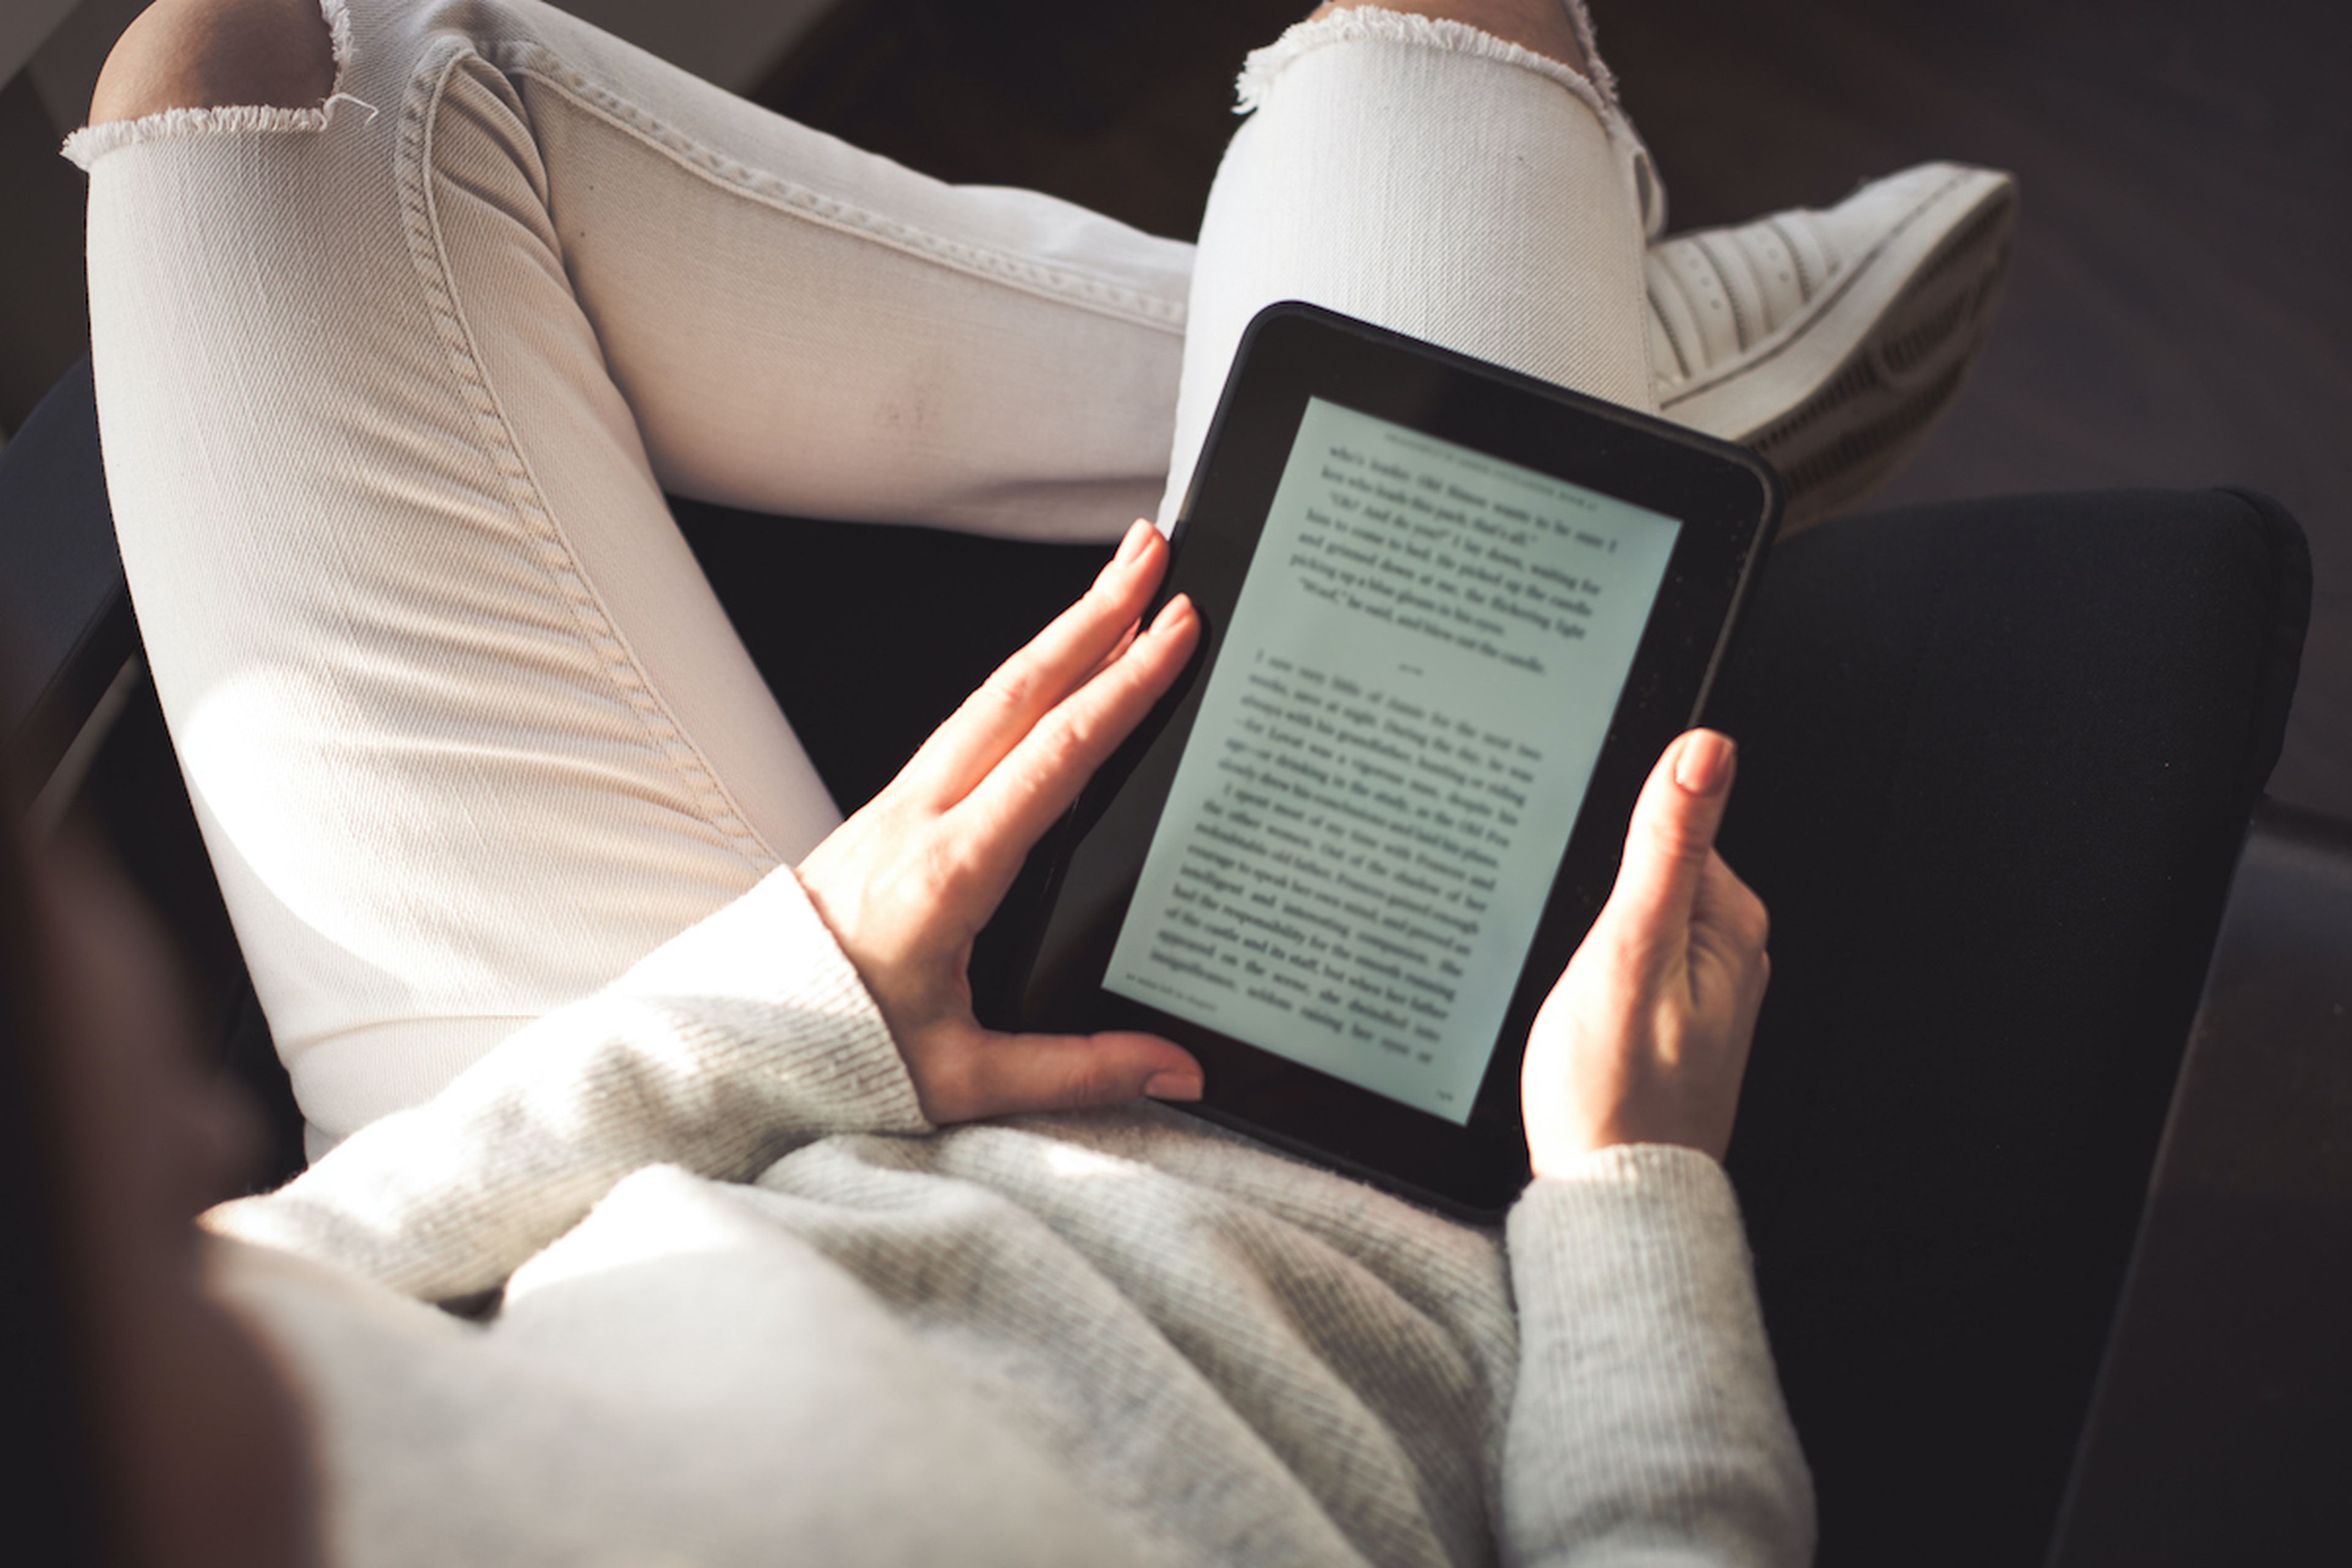 Qué Kindle comprar: guía de compra con recomendaciones para